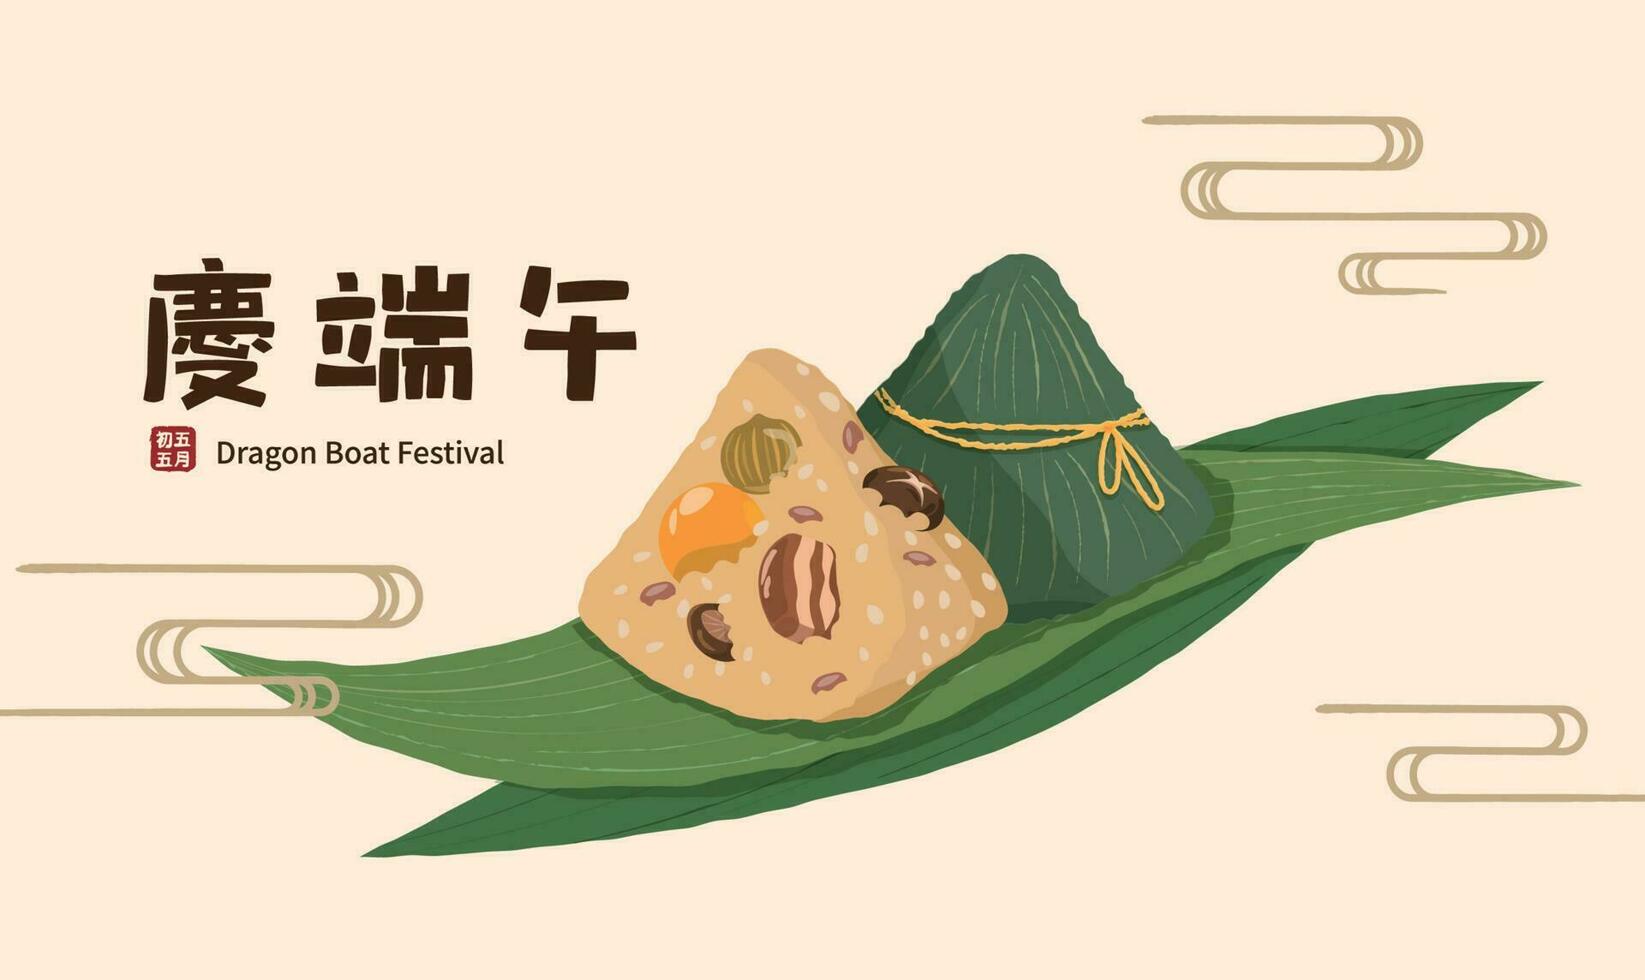 Chinese draak boot festival met rijst- knoedel of zongzi vector illustratie.